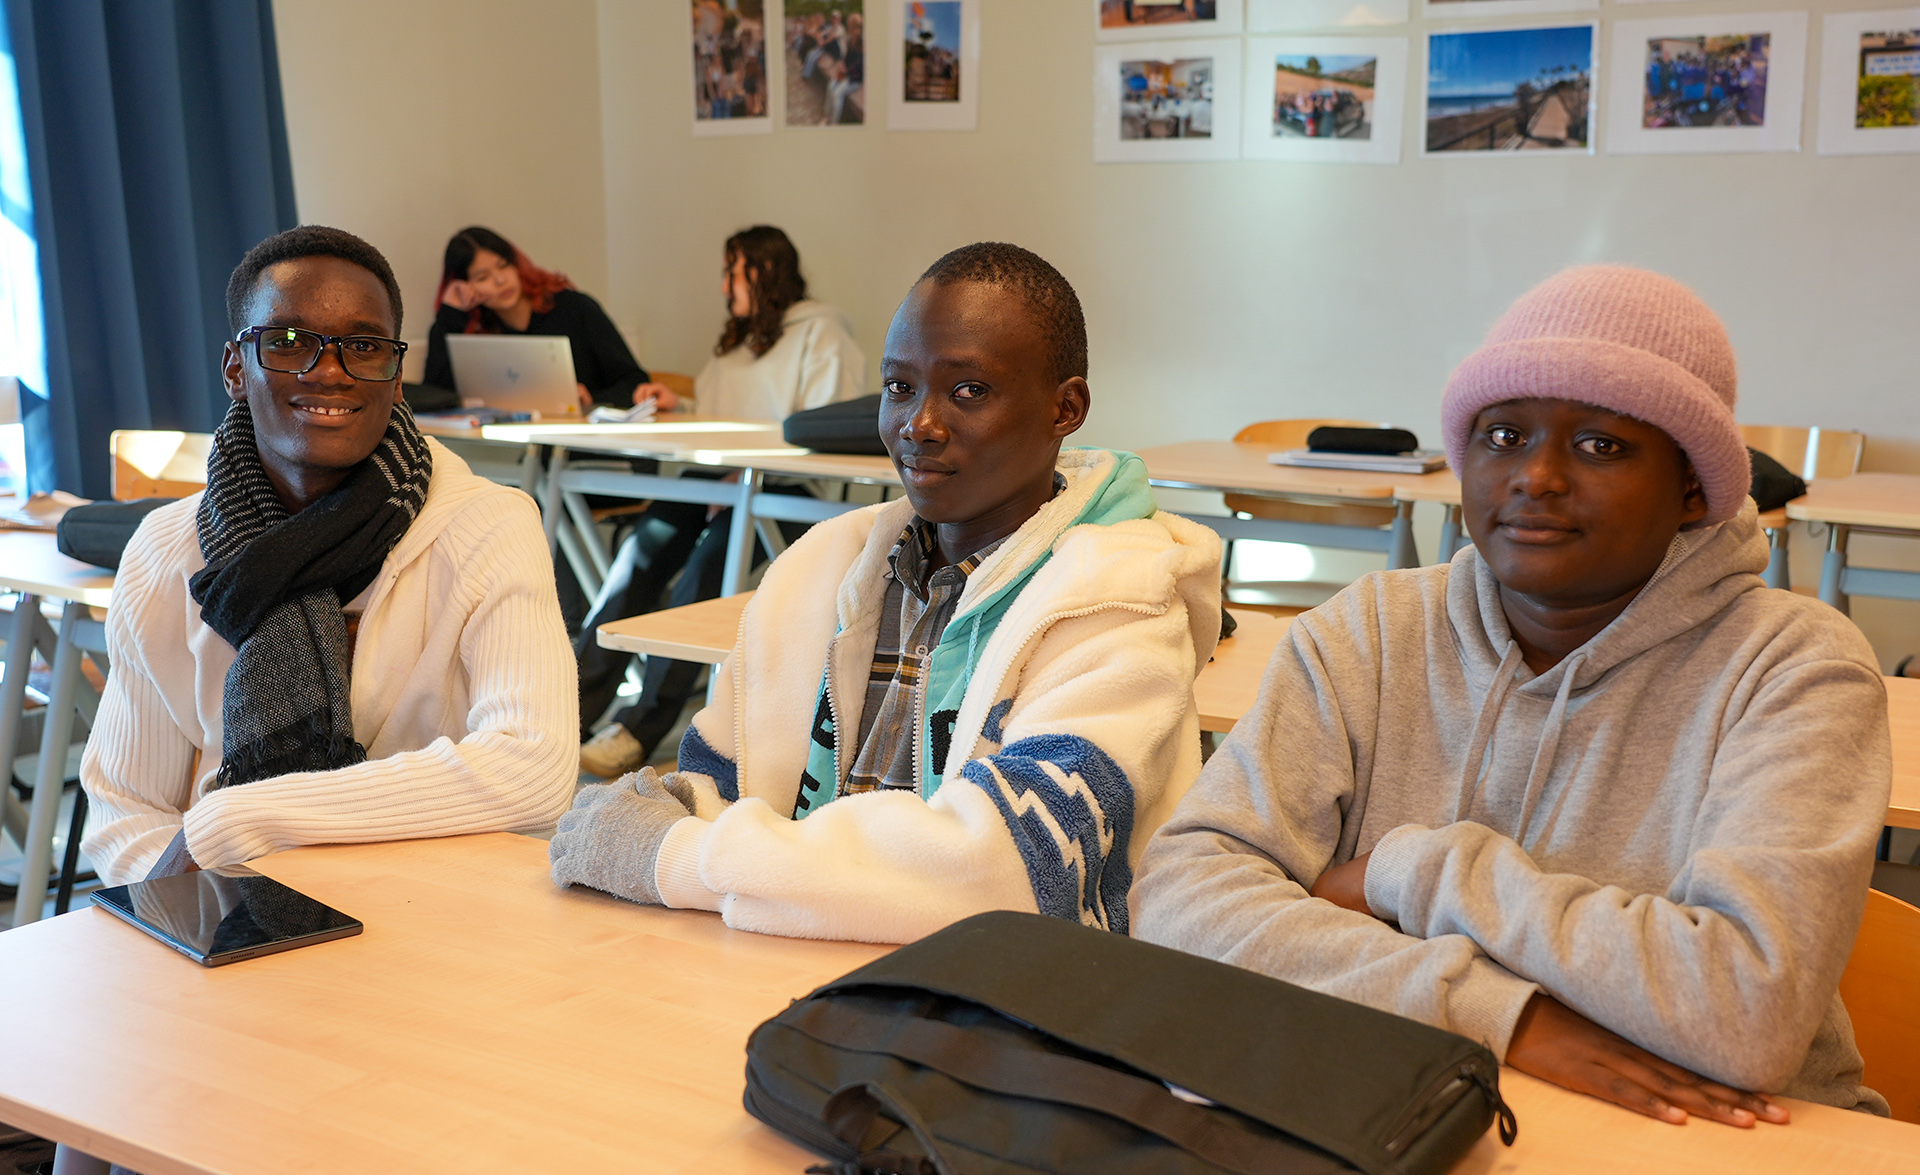 Kenyanska elevernas intryck av Hulebäck och den svenska skolan